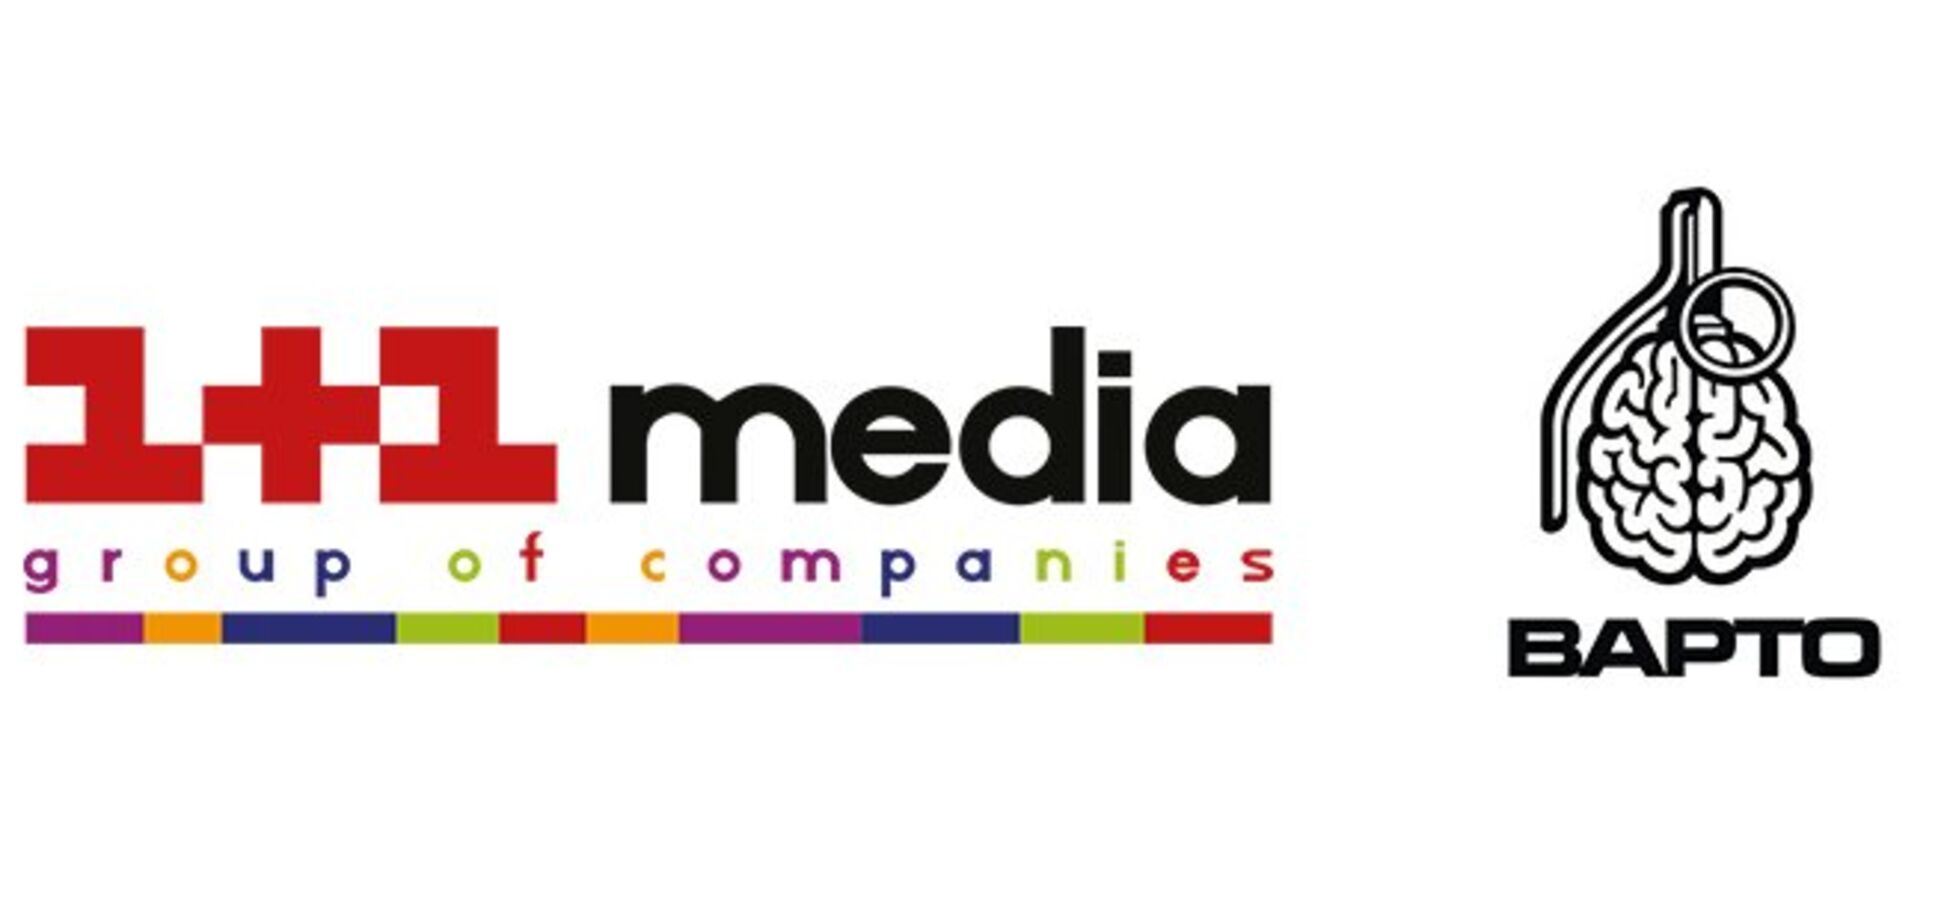 Агентство коммуникаций 'ВАРТО' обеспечит информационную поддержку благотворительному проекту медиахолдинга '1+1 Медиа'